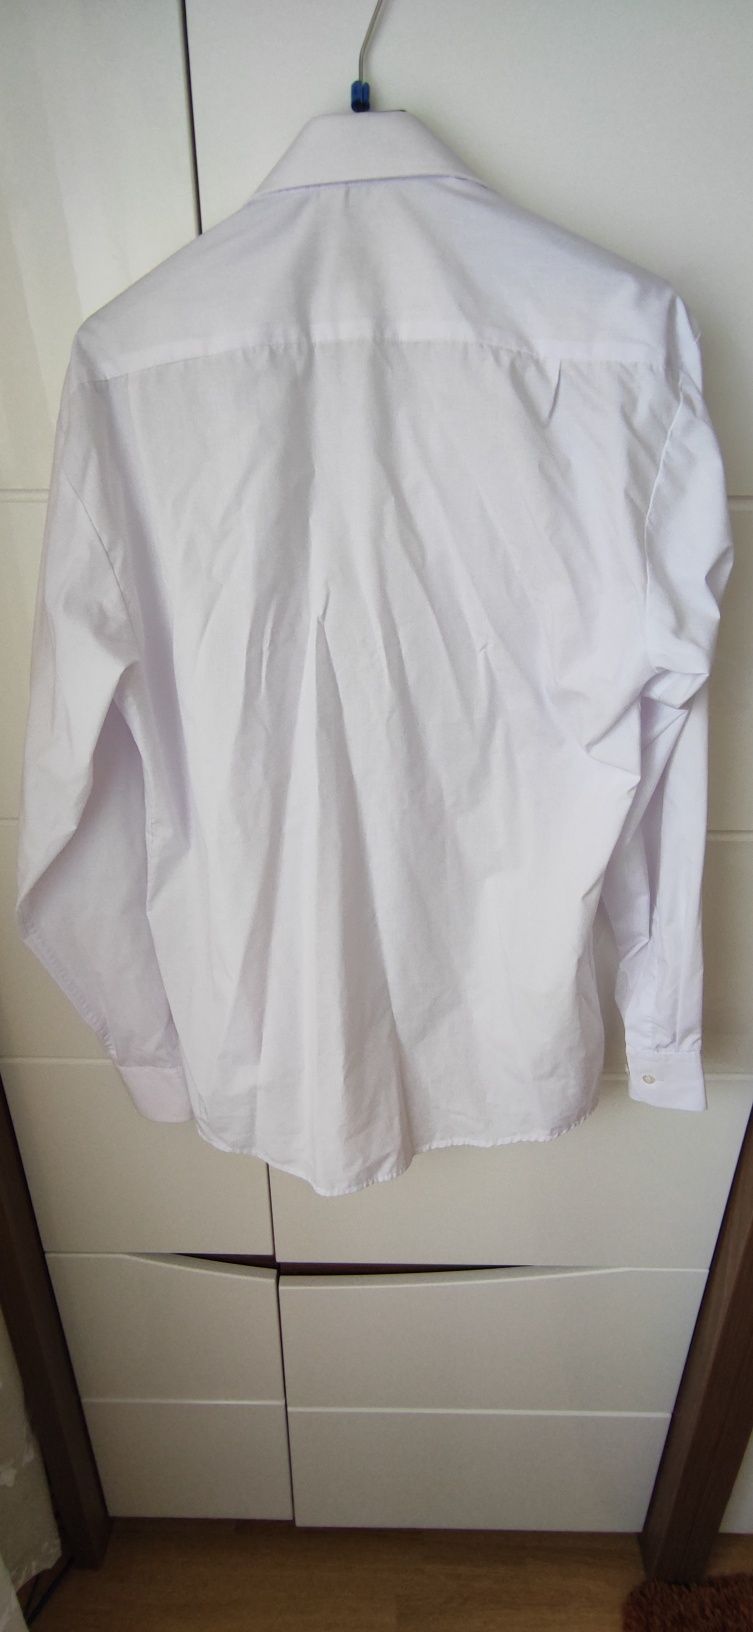 Koszula męska długi rękaw biała rozmiar 39